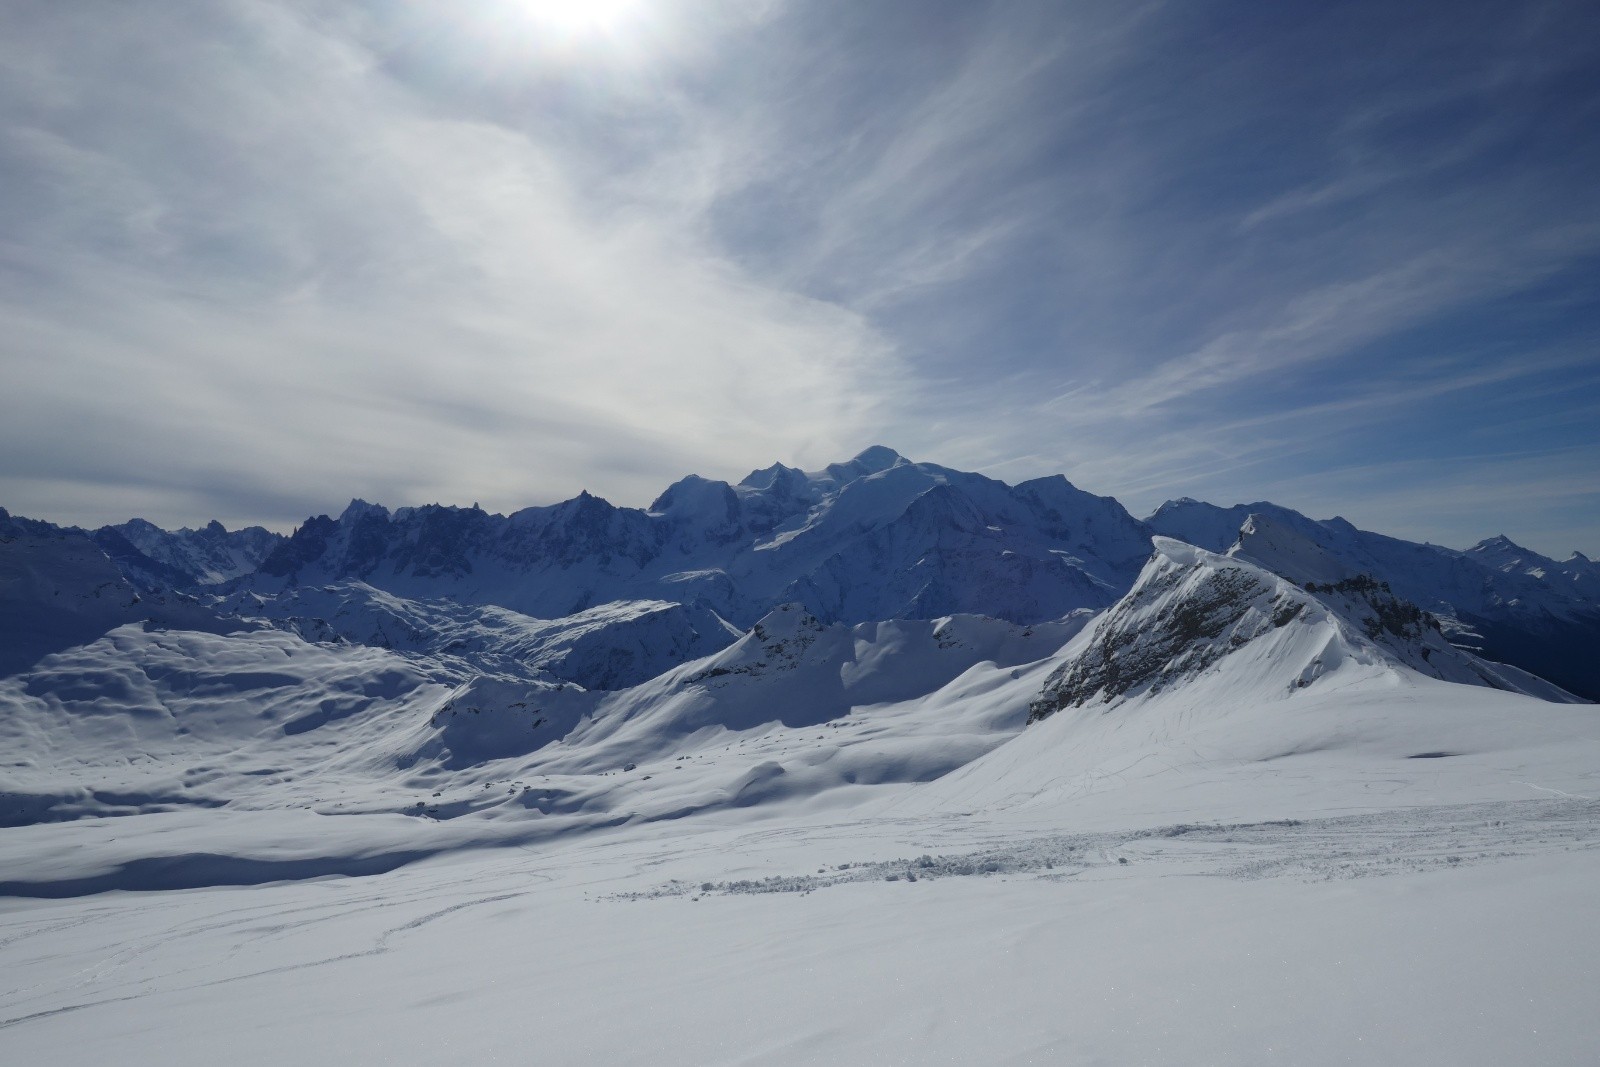 Début de la descente vers le vallon de Sales, ciel voilé, massif du Mont Blanc au fond